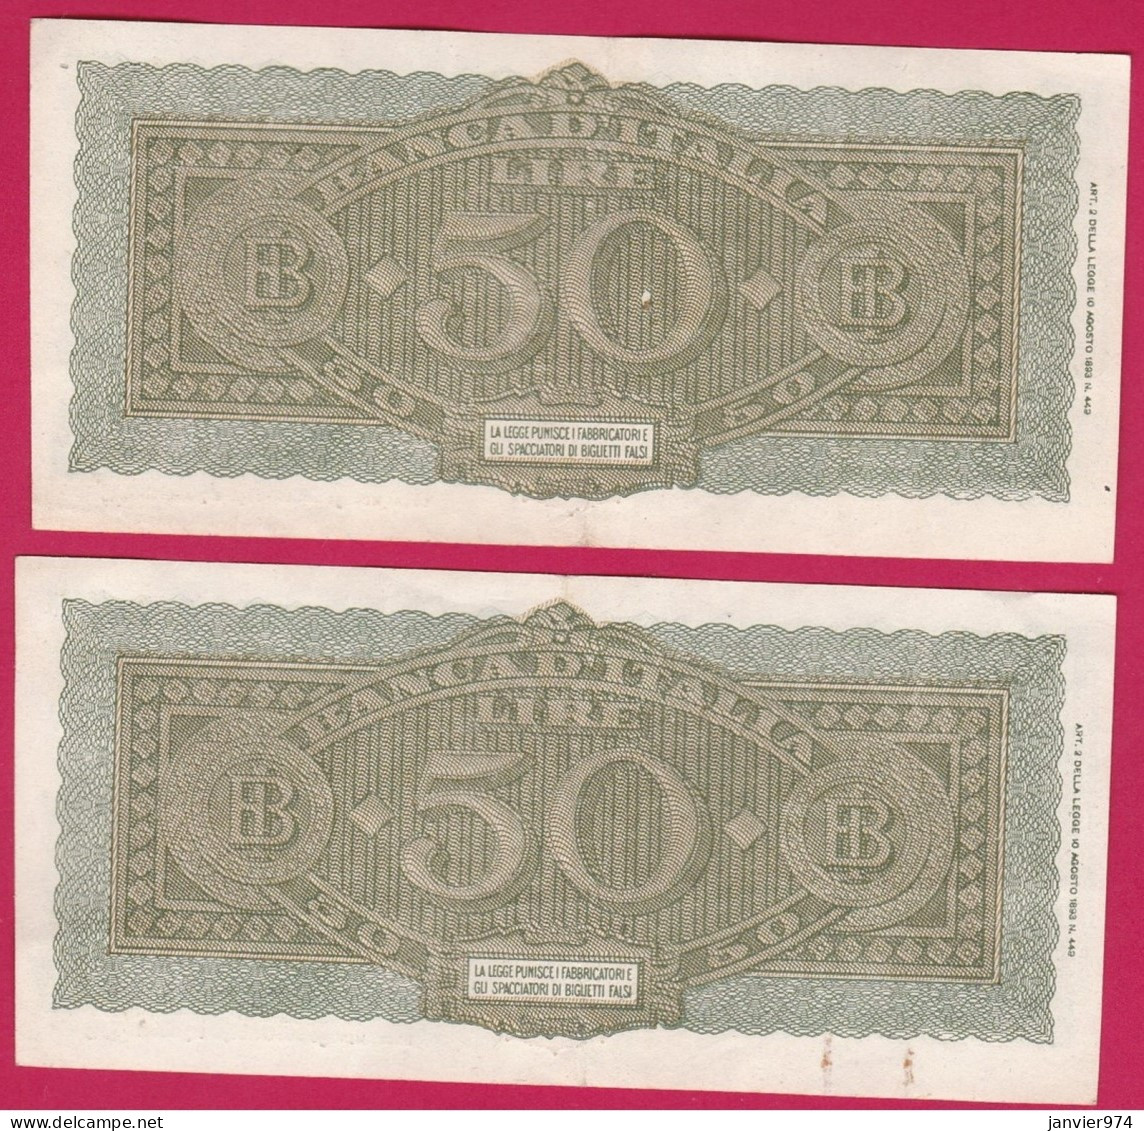 2 Billets De 50 Lire TURRITA 1944, Alphabet : H16, N° 001641 Et 001642, Numéro Qui Se Suive,  TTB - 50 Liras